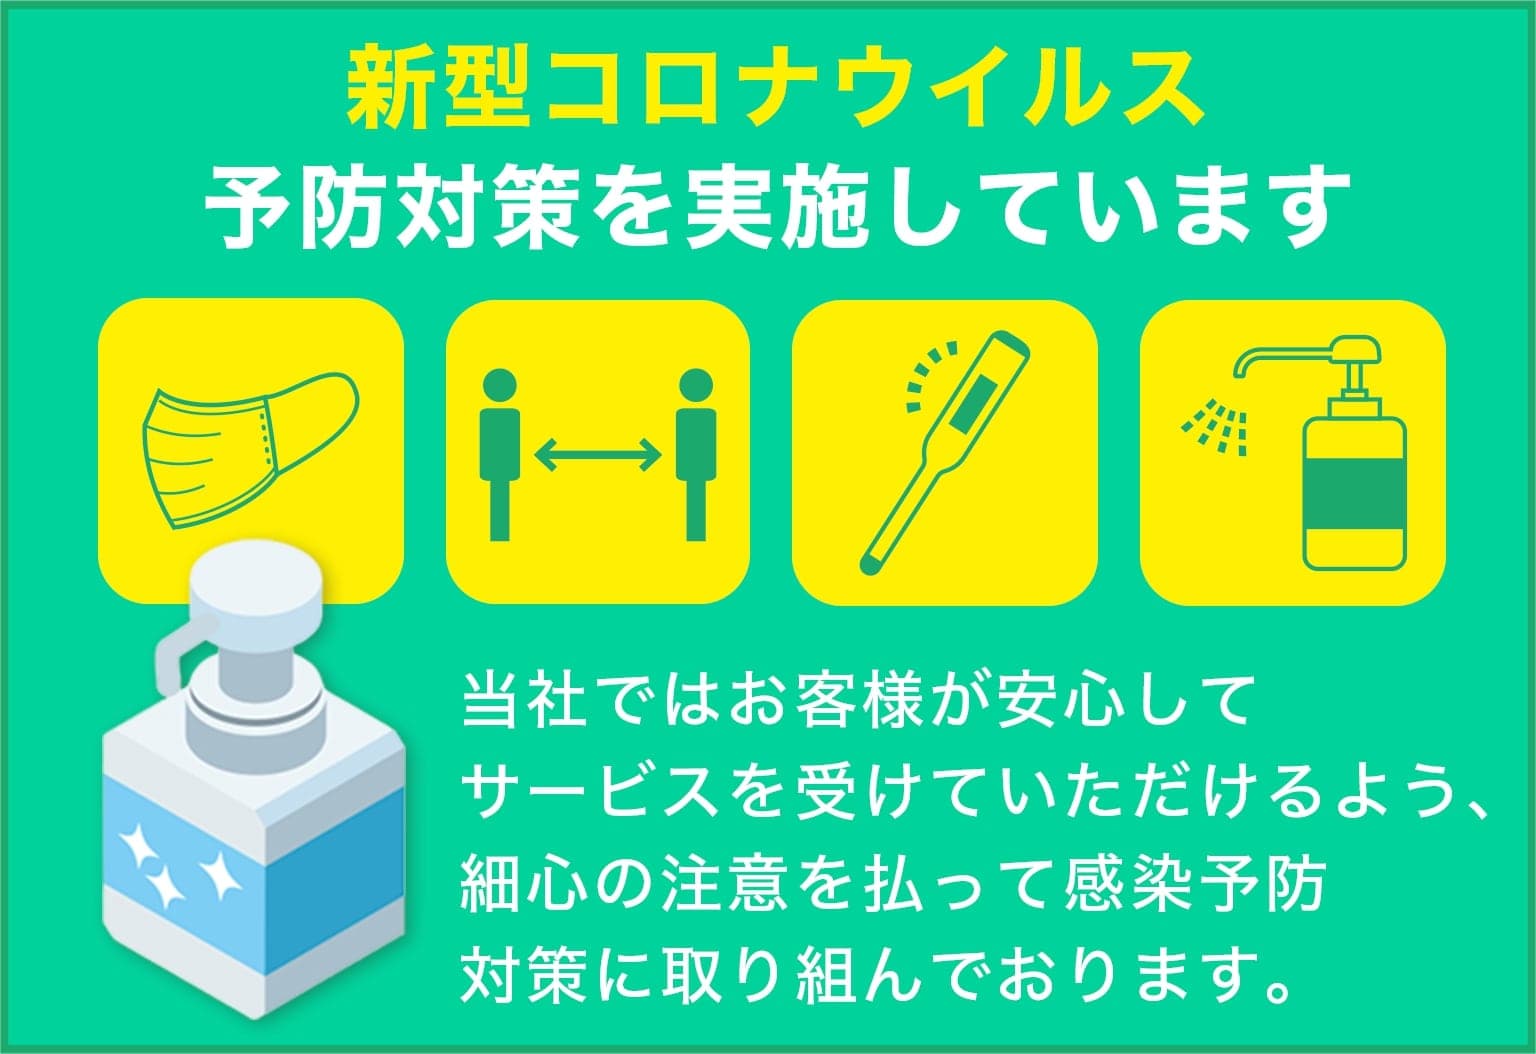 千賀造園は新型コロナウイルス予防対策を実施しています